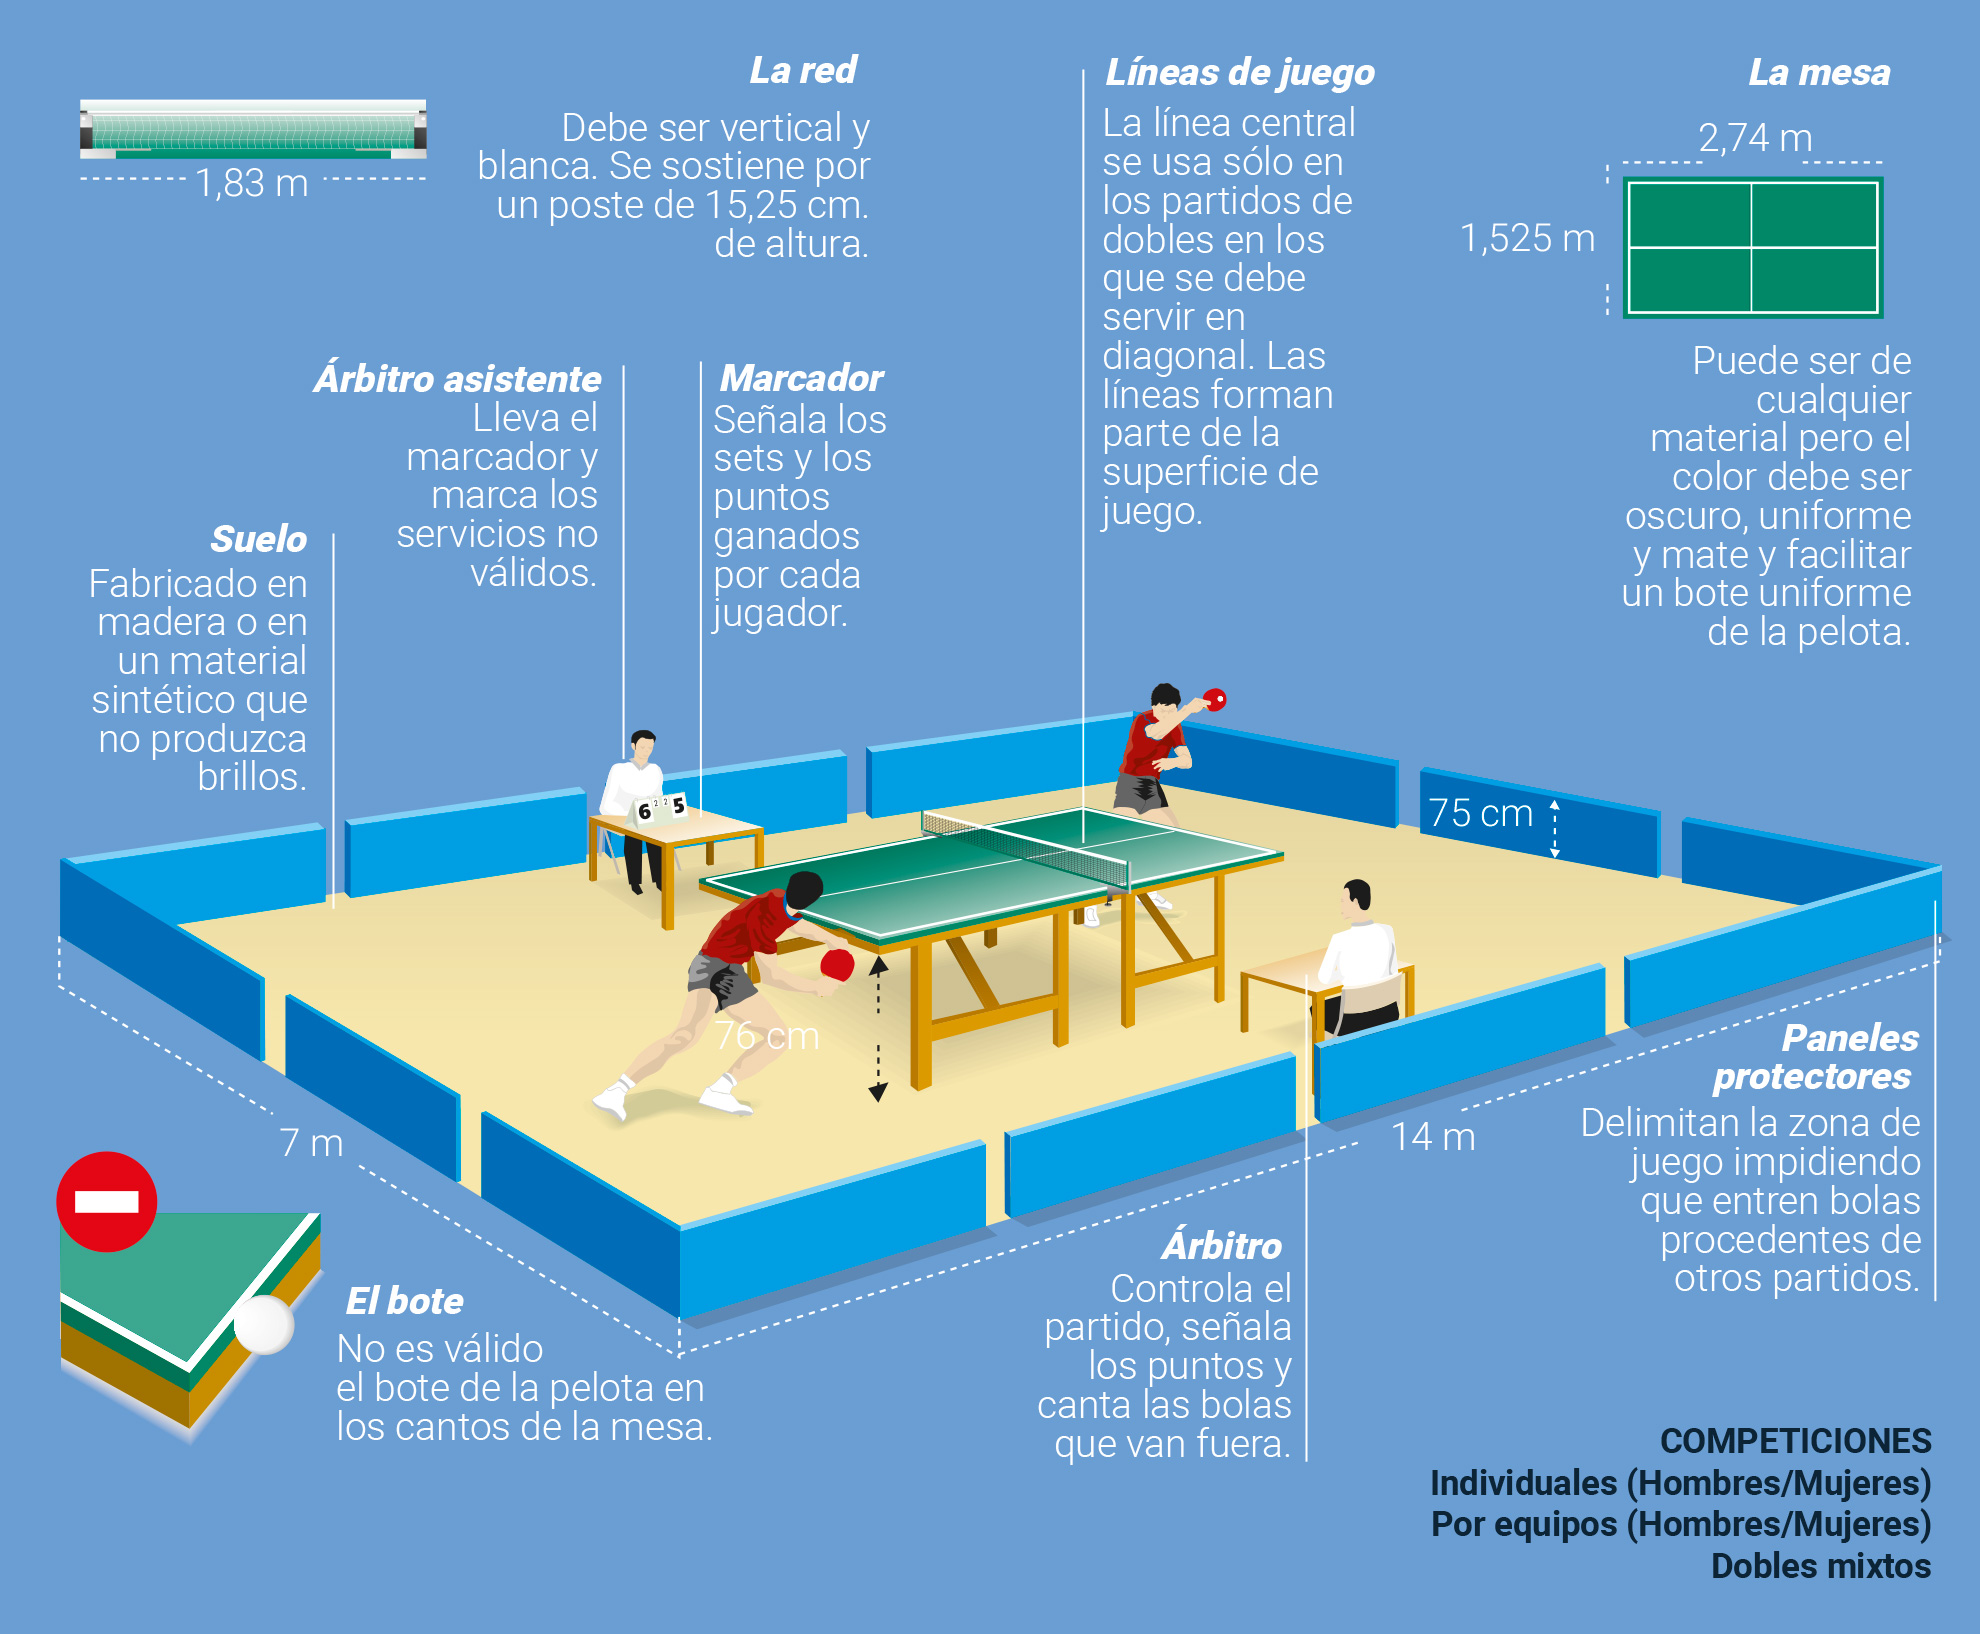 curva su Desplazamiento Tenis de Mesa - Ping Pong - Enciclopedia deportiva - Olimpiadas Tokio 2021